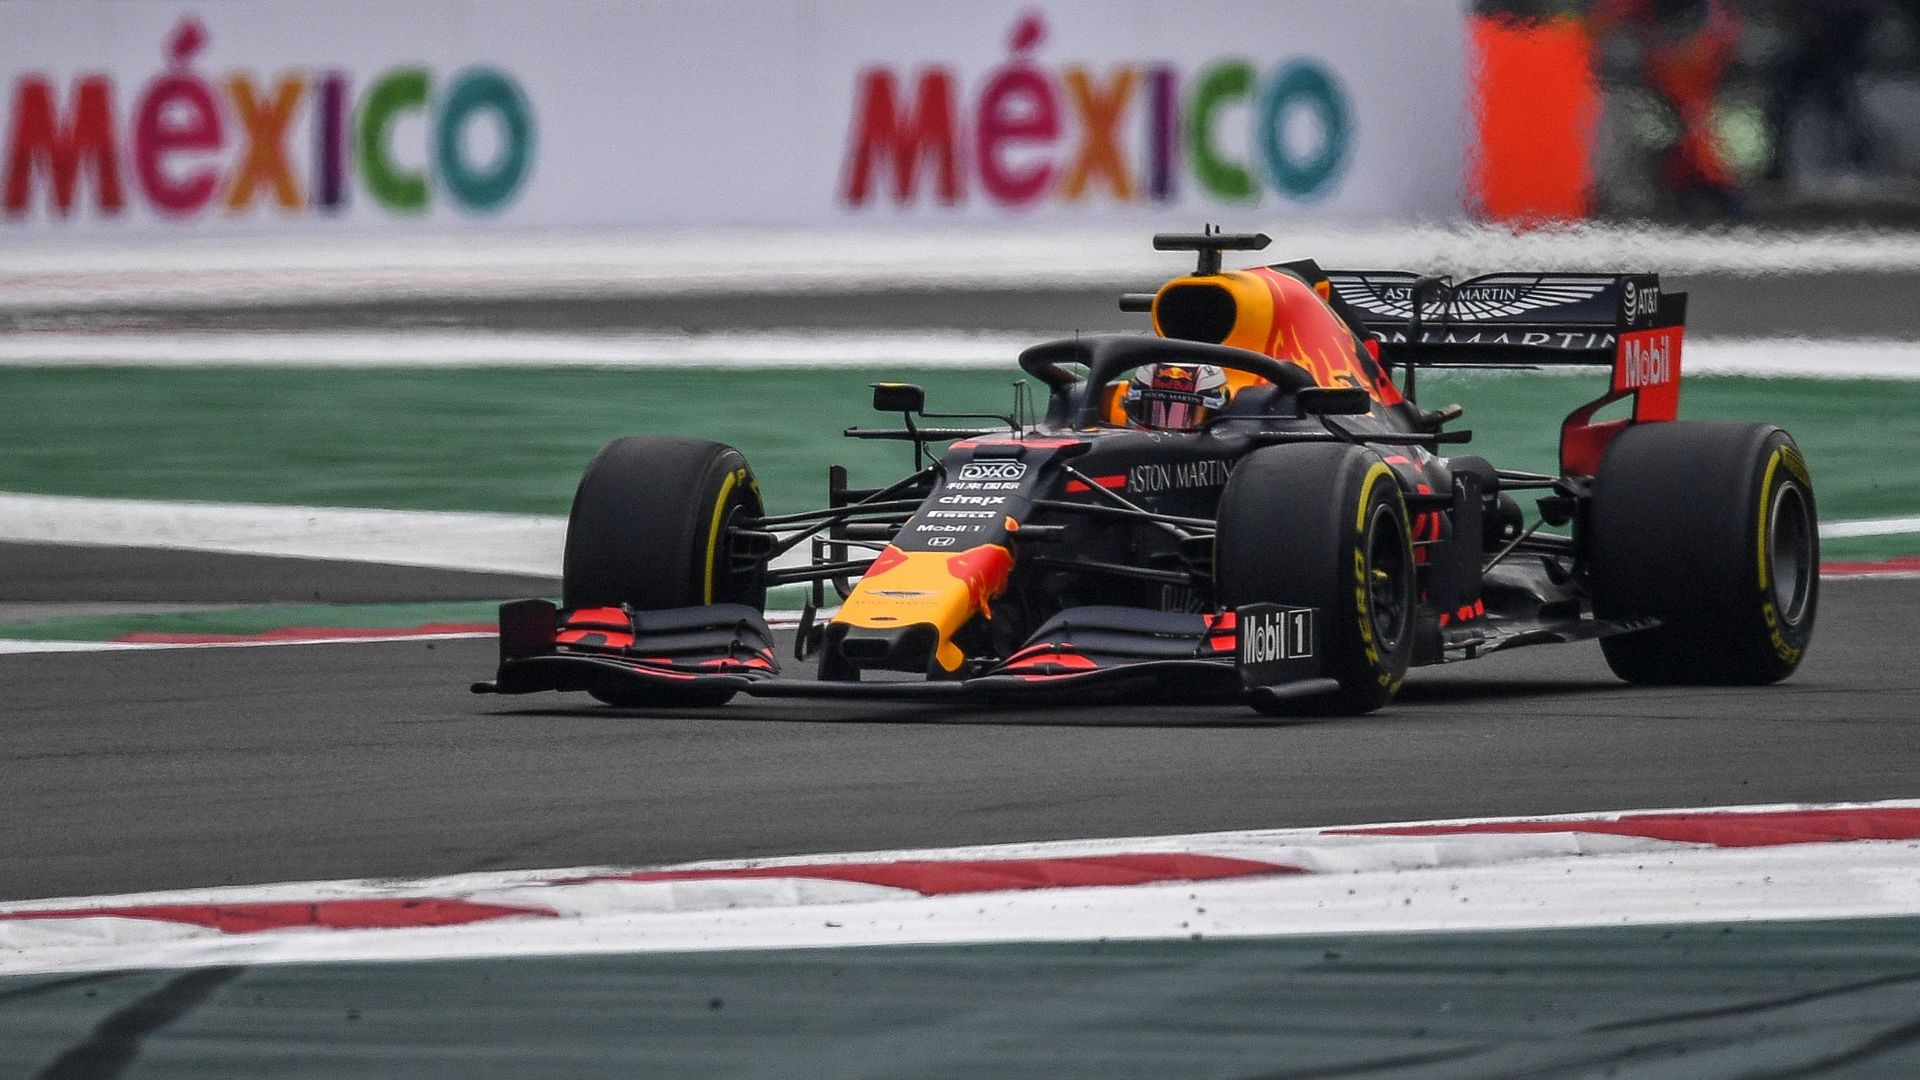 La Red Bull de Max Verstappen au Mexique en 2019